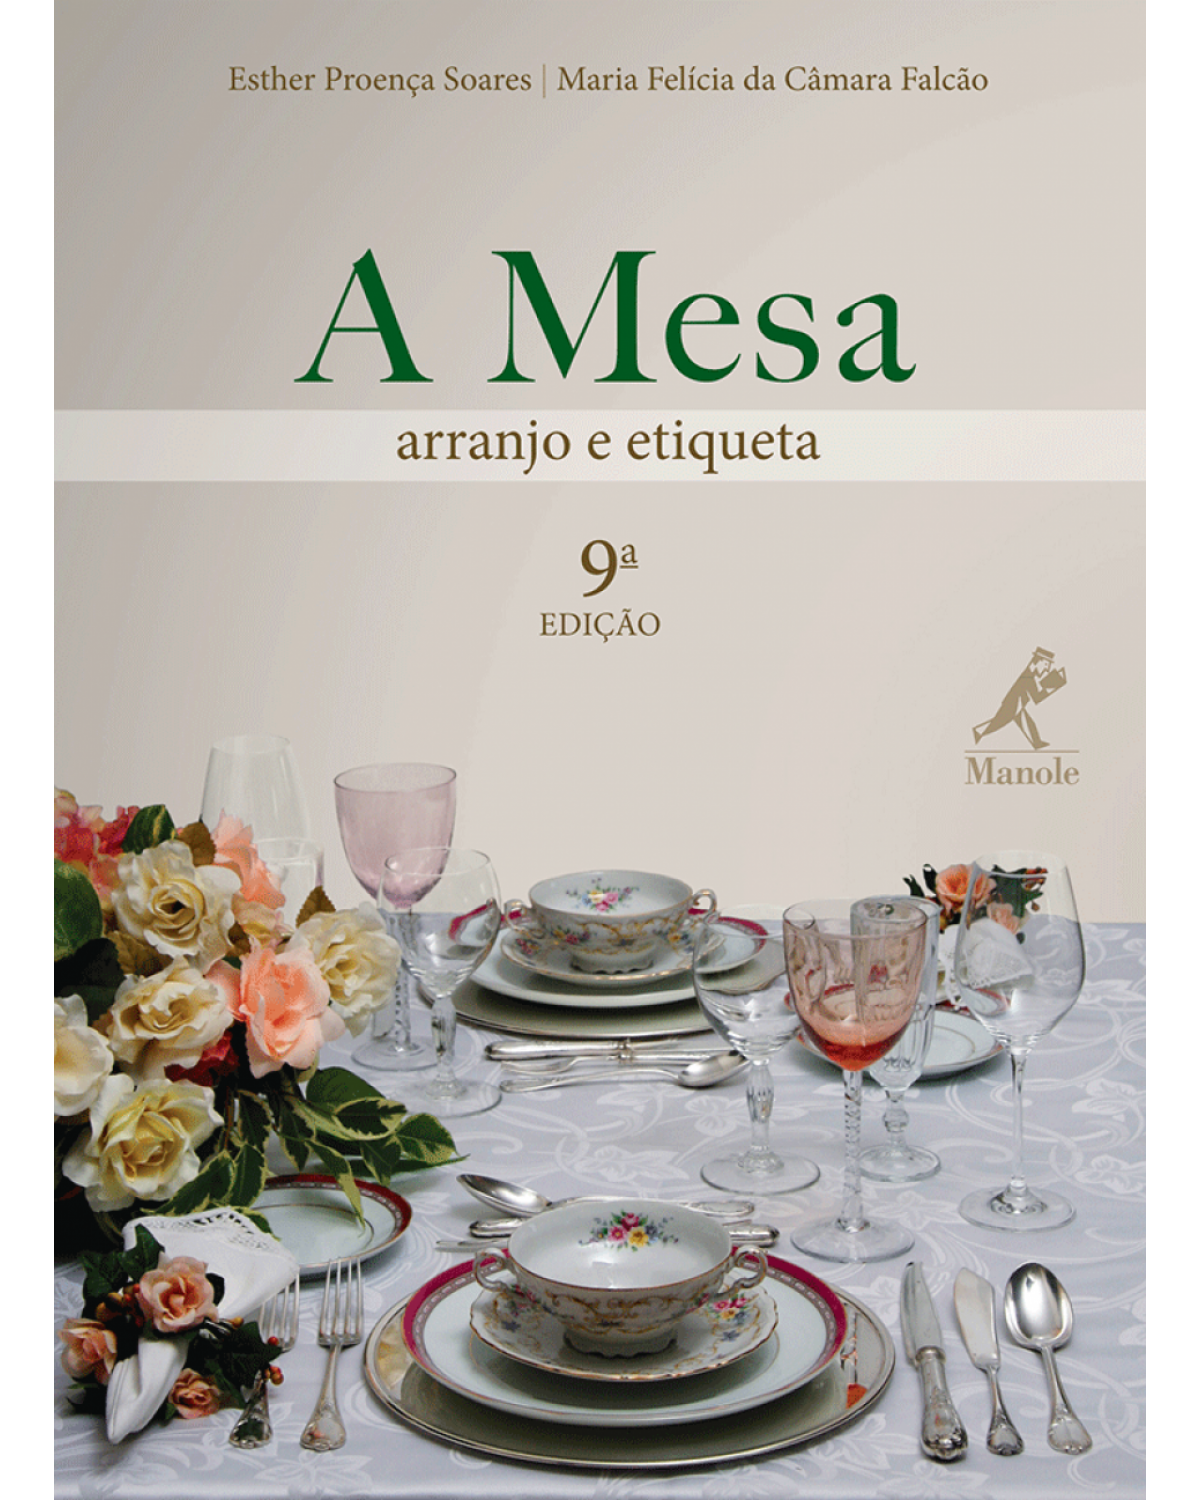 A mesa - Arranjo e etiqueta - 9ª Edição | 2010